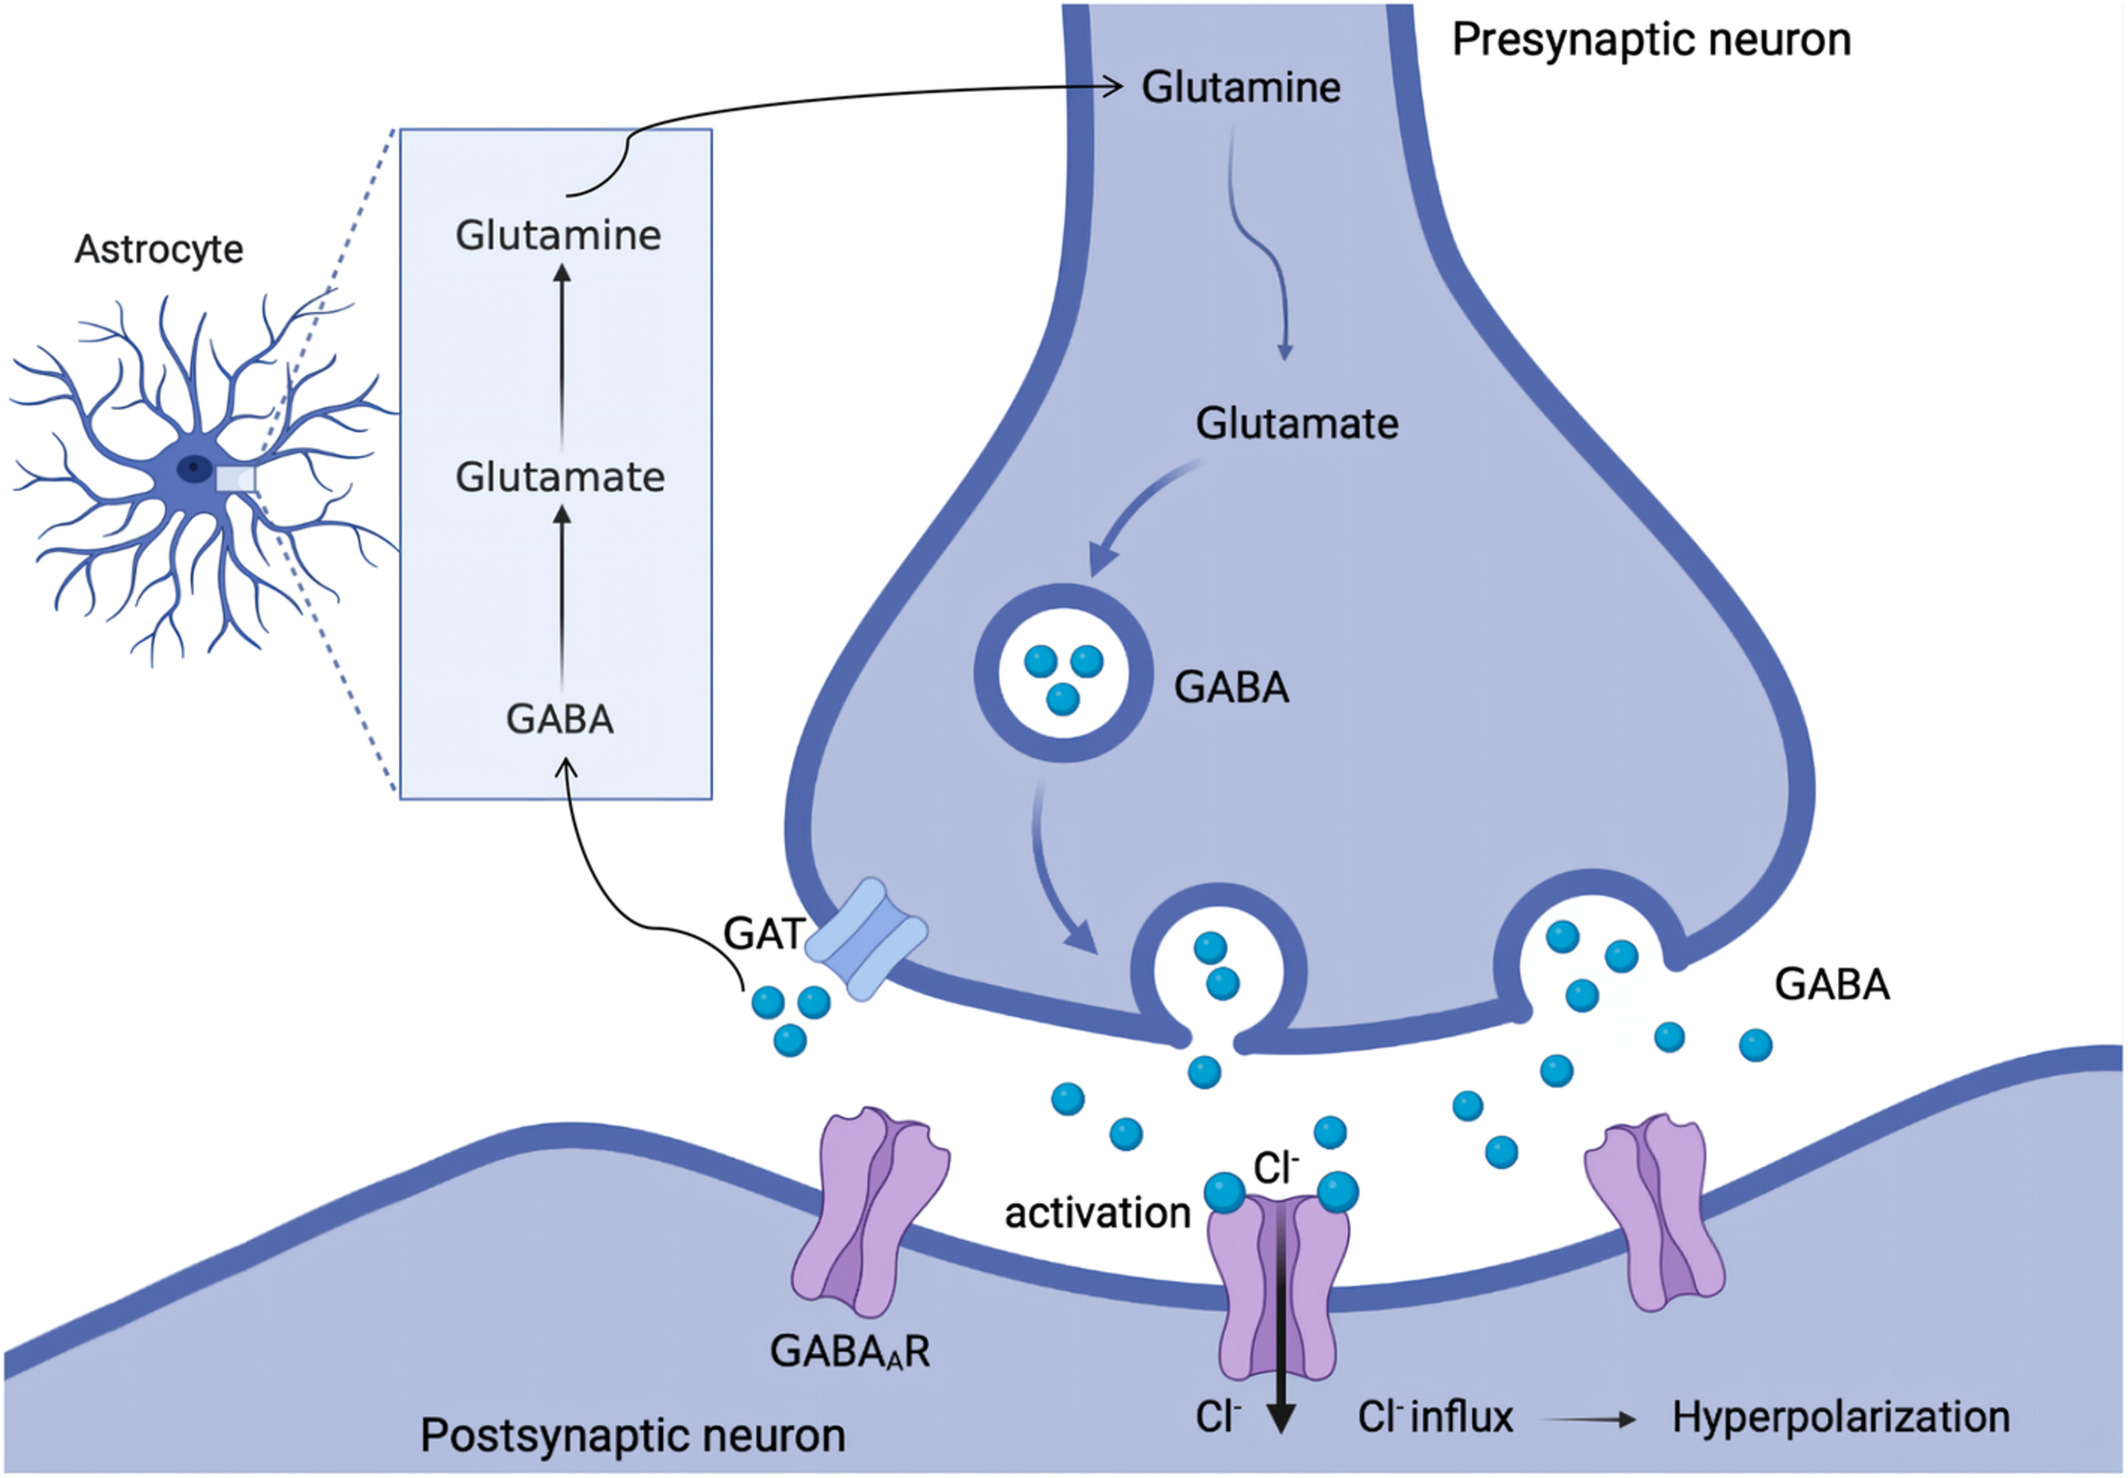 <p>Gamma-aminobutyric acid (GABA)</p><p></p><p>via hyperpolarisation (Chloride influx)</p>